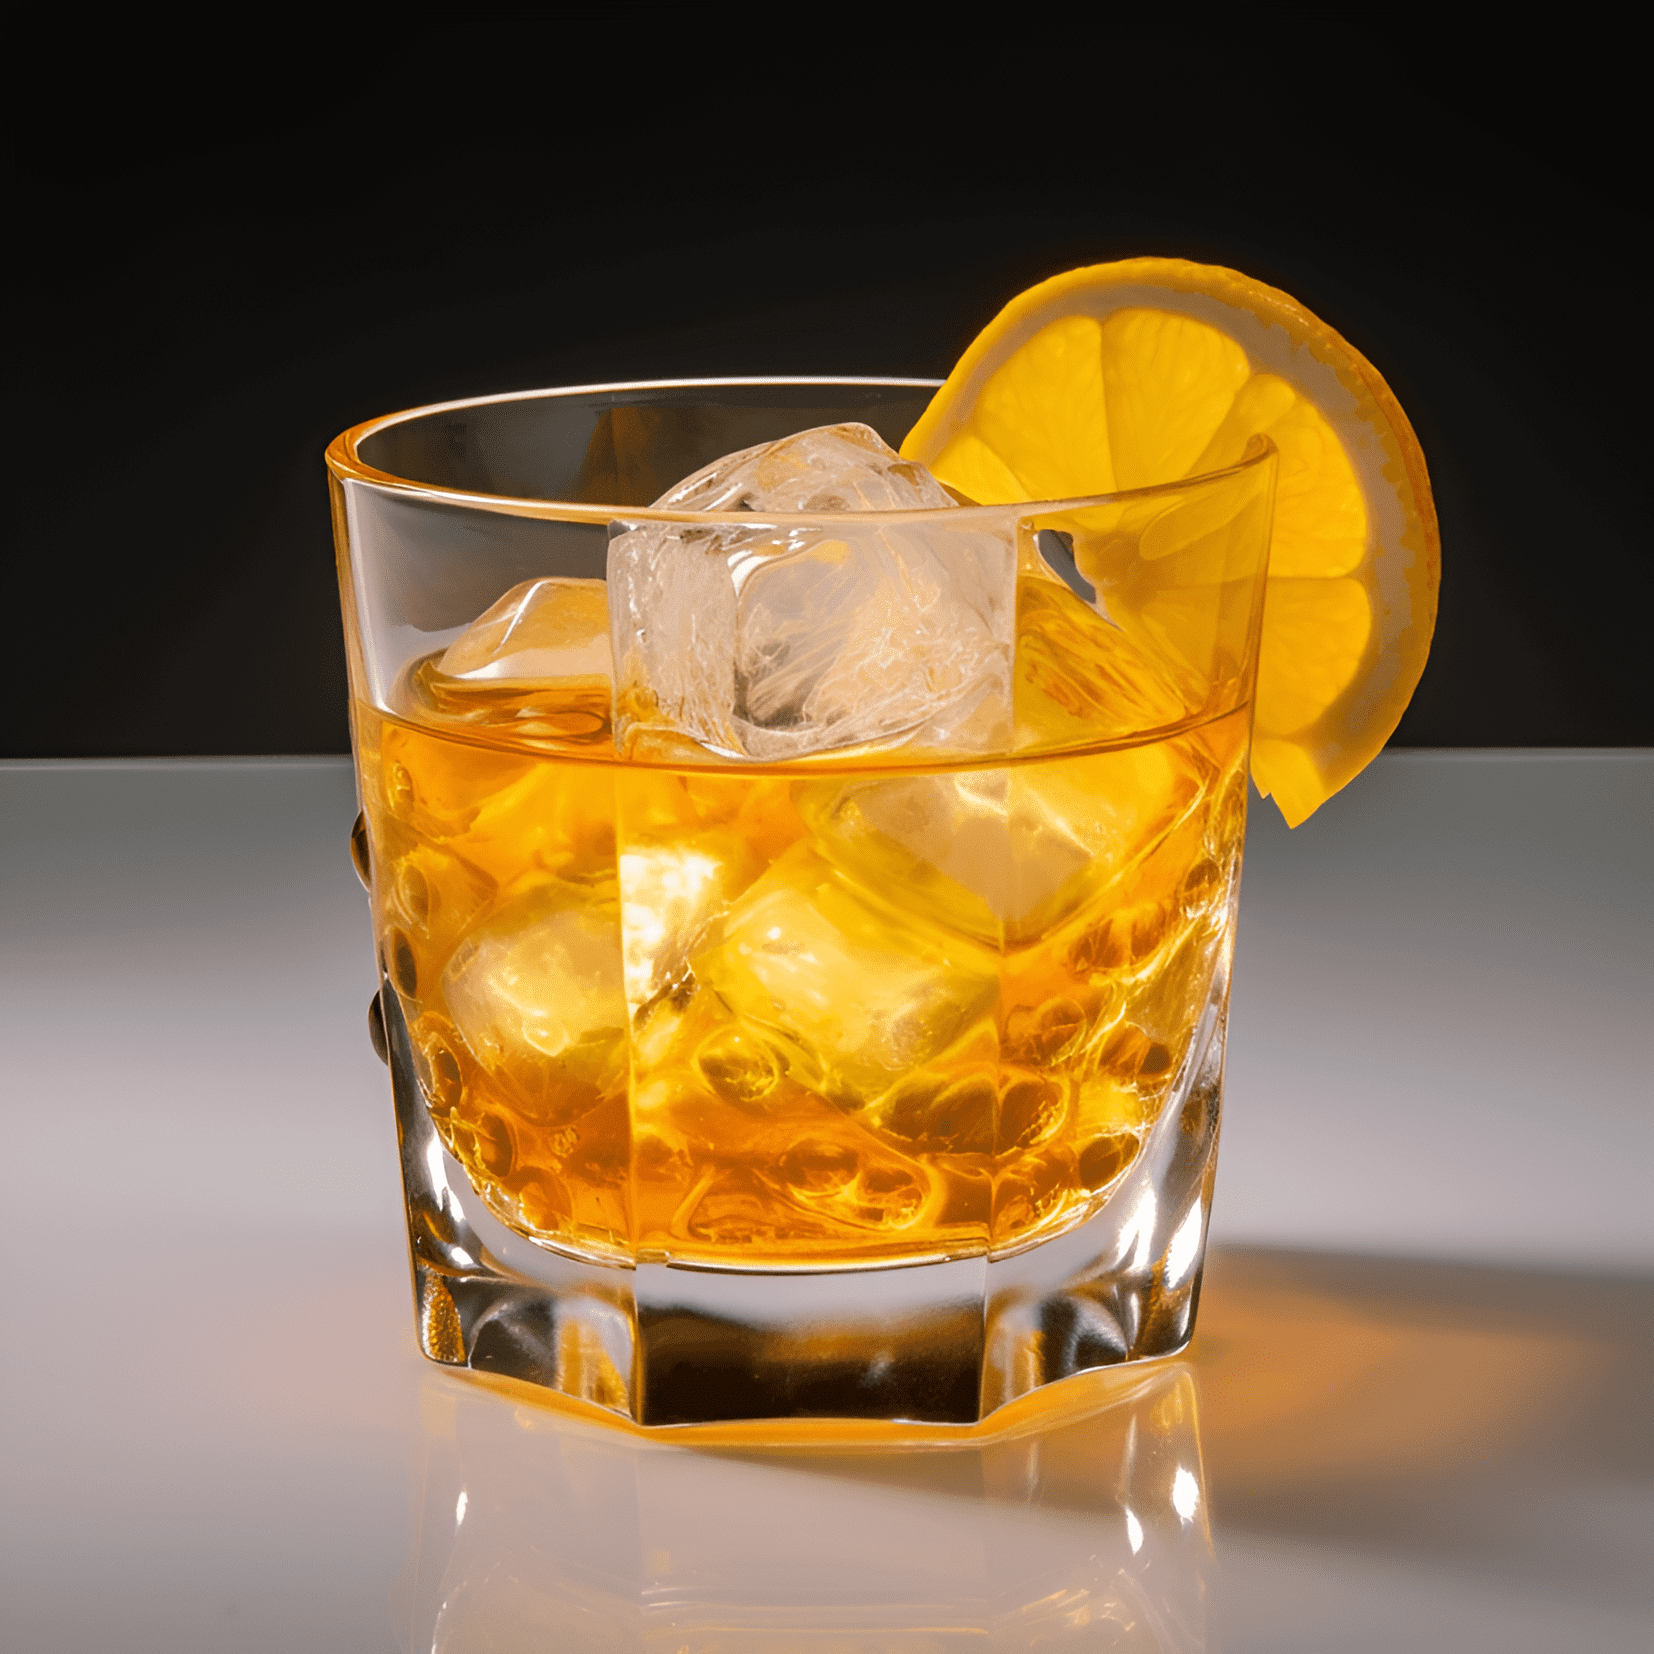 Mark Twain Cóctel Receta - El cóctel Mark Twain tiene un sabor equilibrado, ligeramente dulce y agrio con una base de whisky fuerte. El jugo de limón agrega una nota cítrica refrescante, mientras que el jarabe simple proporciona un toque de dulzura. Los bitters le dan un final complejo y aromático.